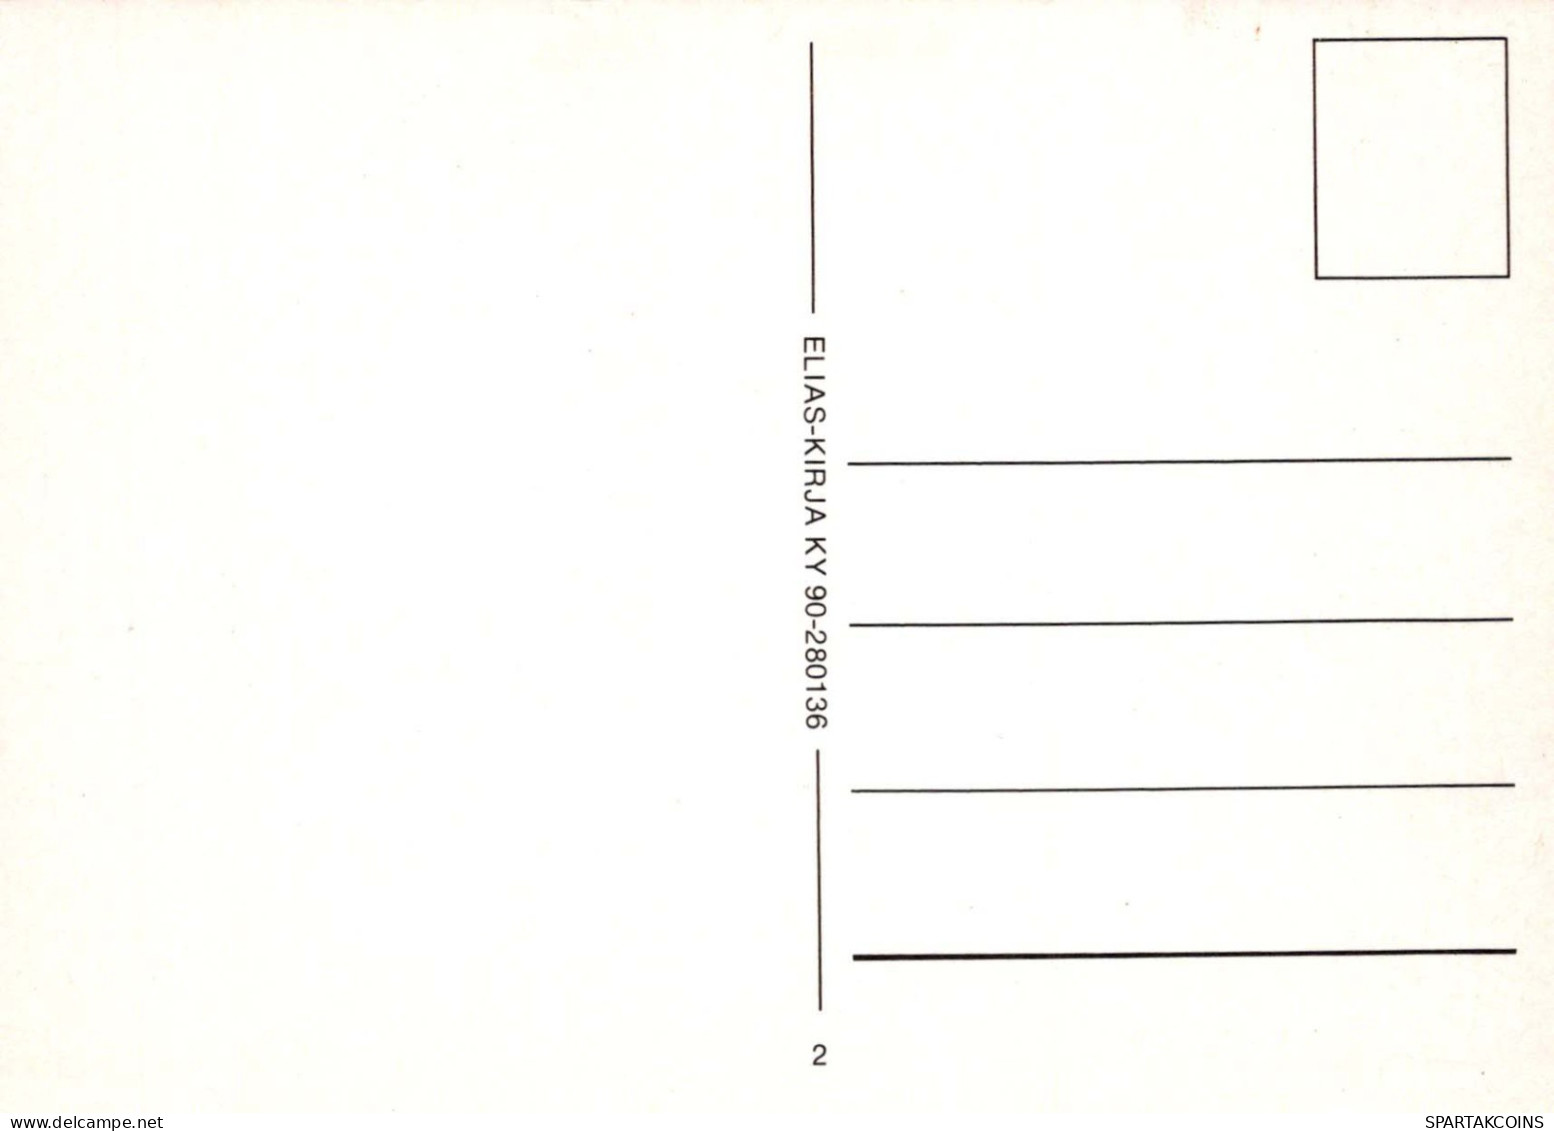 NIÑOS HUMOR Vintage Tarjeta Postal CPSM #PBV319.A - Humorous Cards